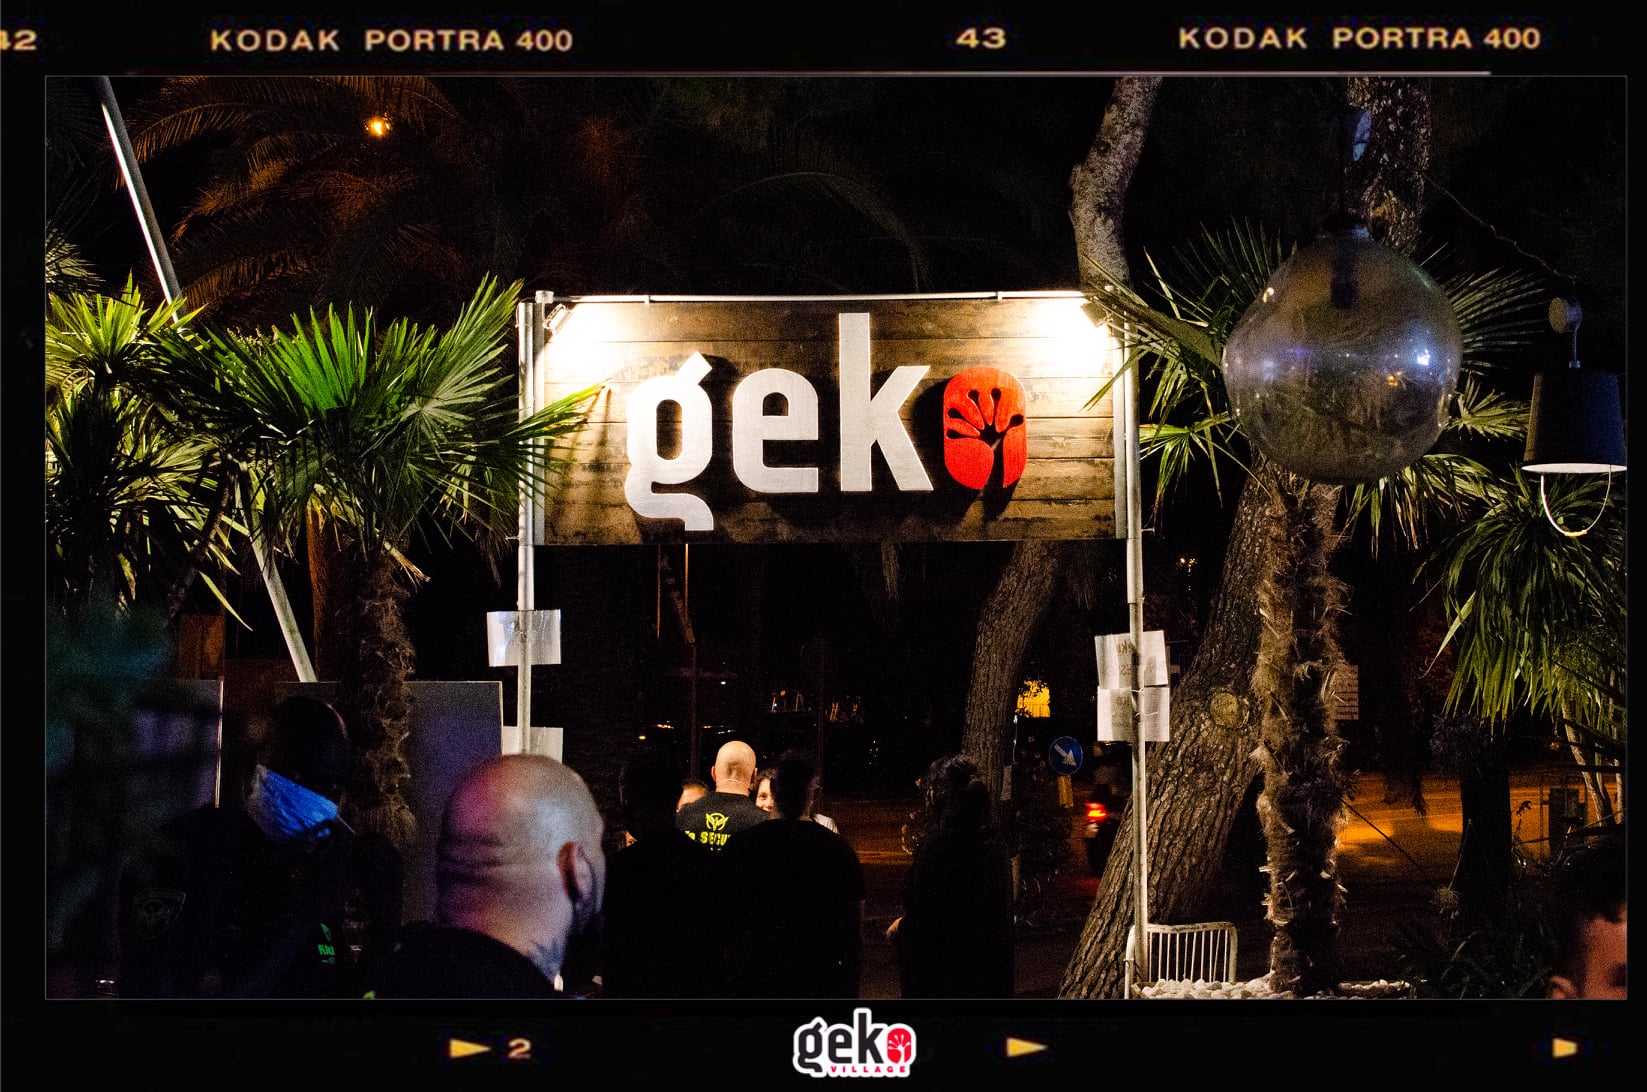 Sabato pre Ferragosto 2022 per la Discoteca Geko di San Benedetto